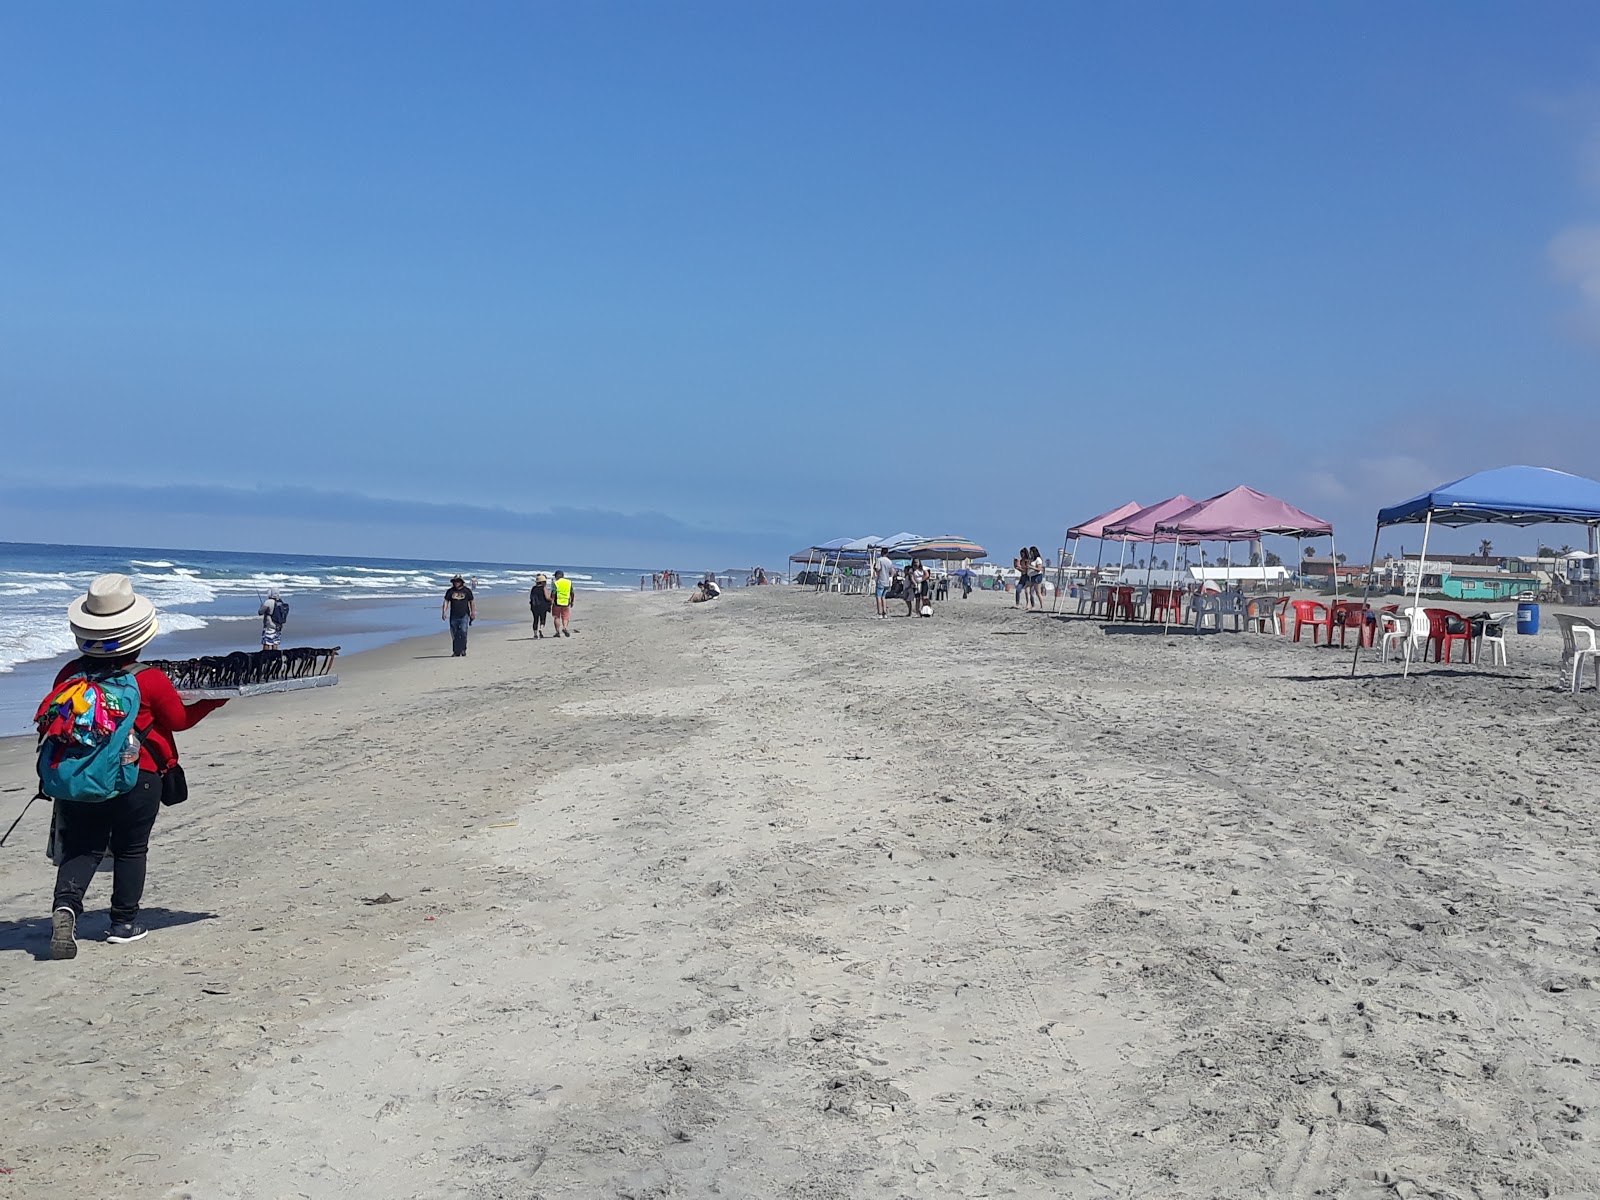 Playa De Rosarito'in fotoğrafı kahverengi kum yüzey ile